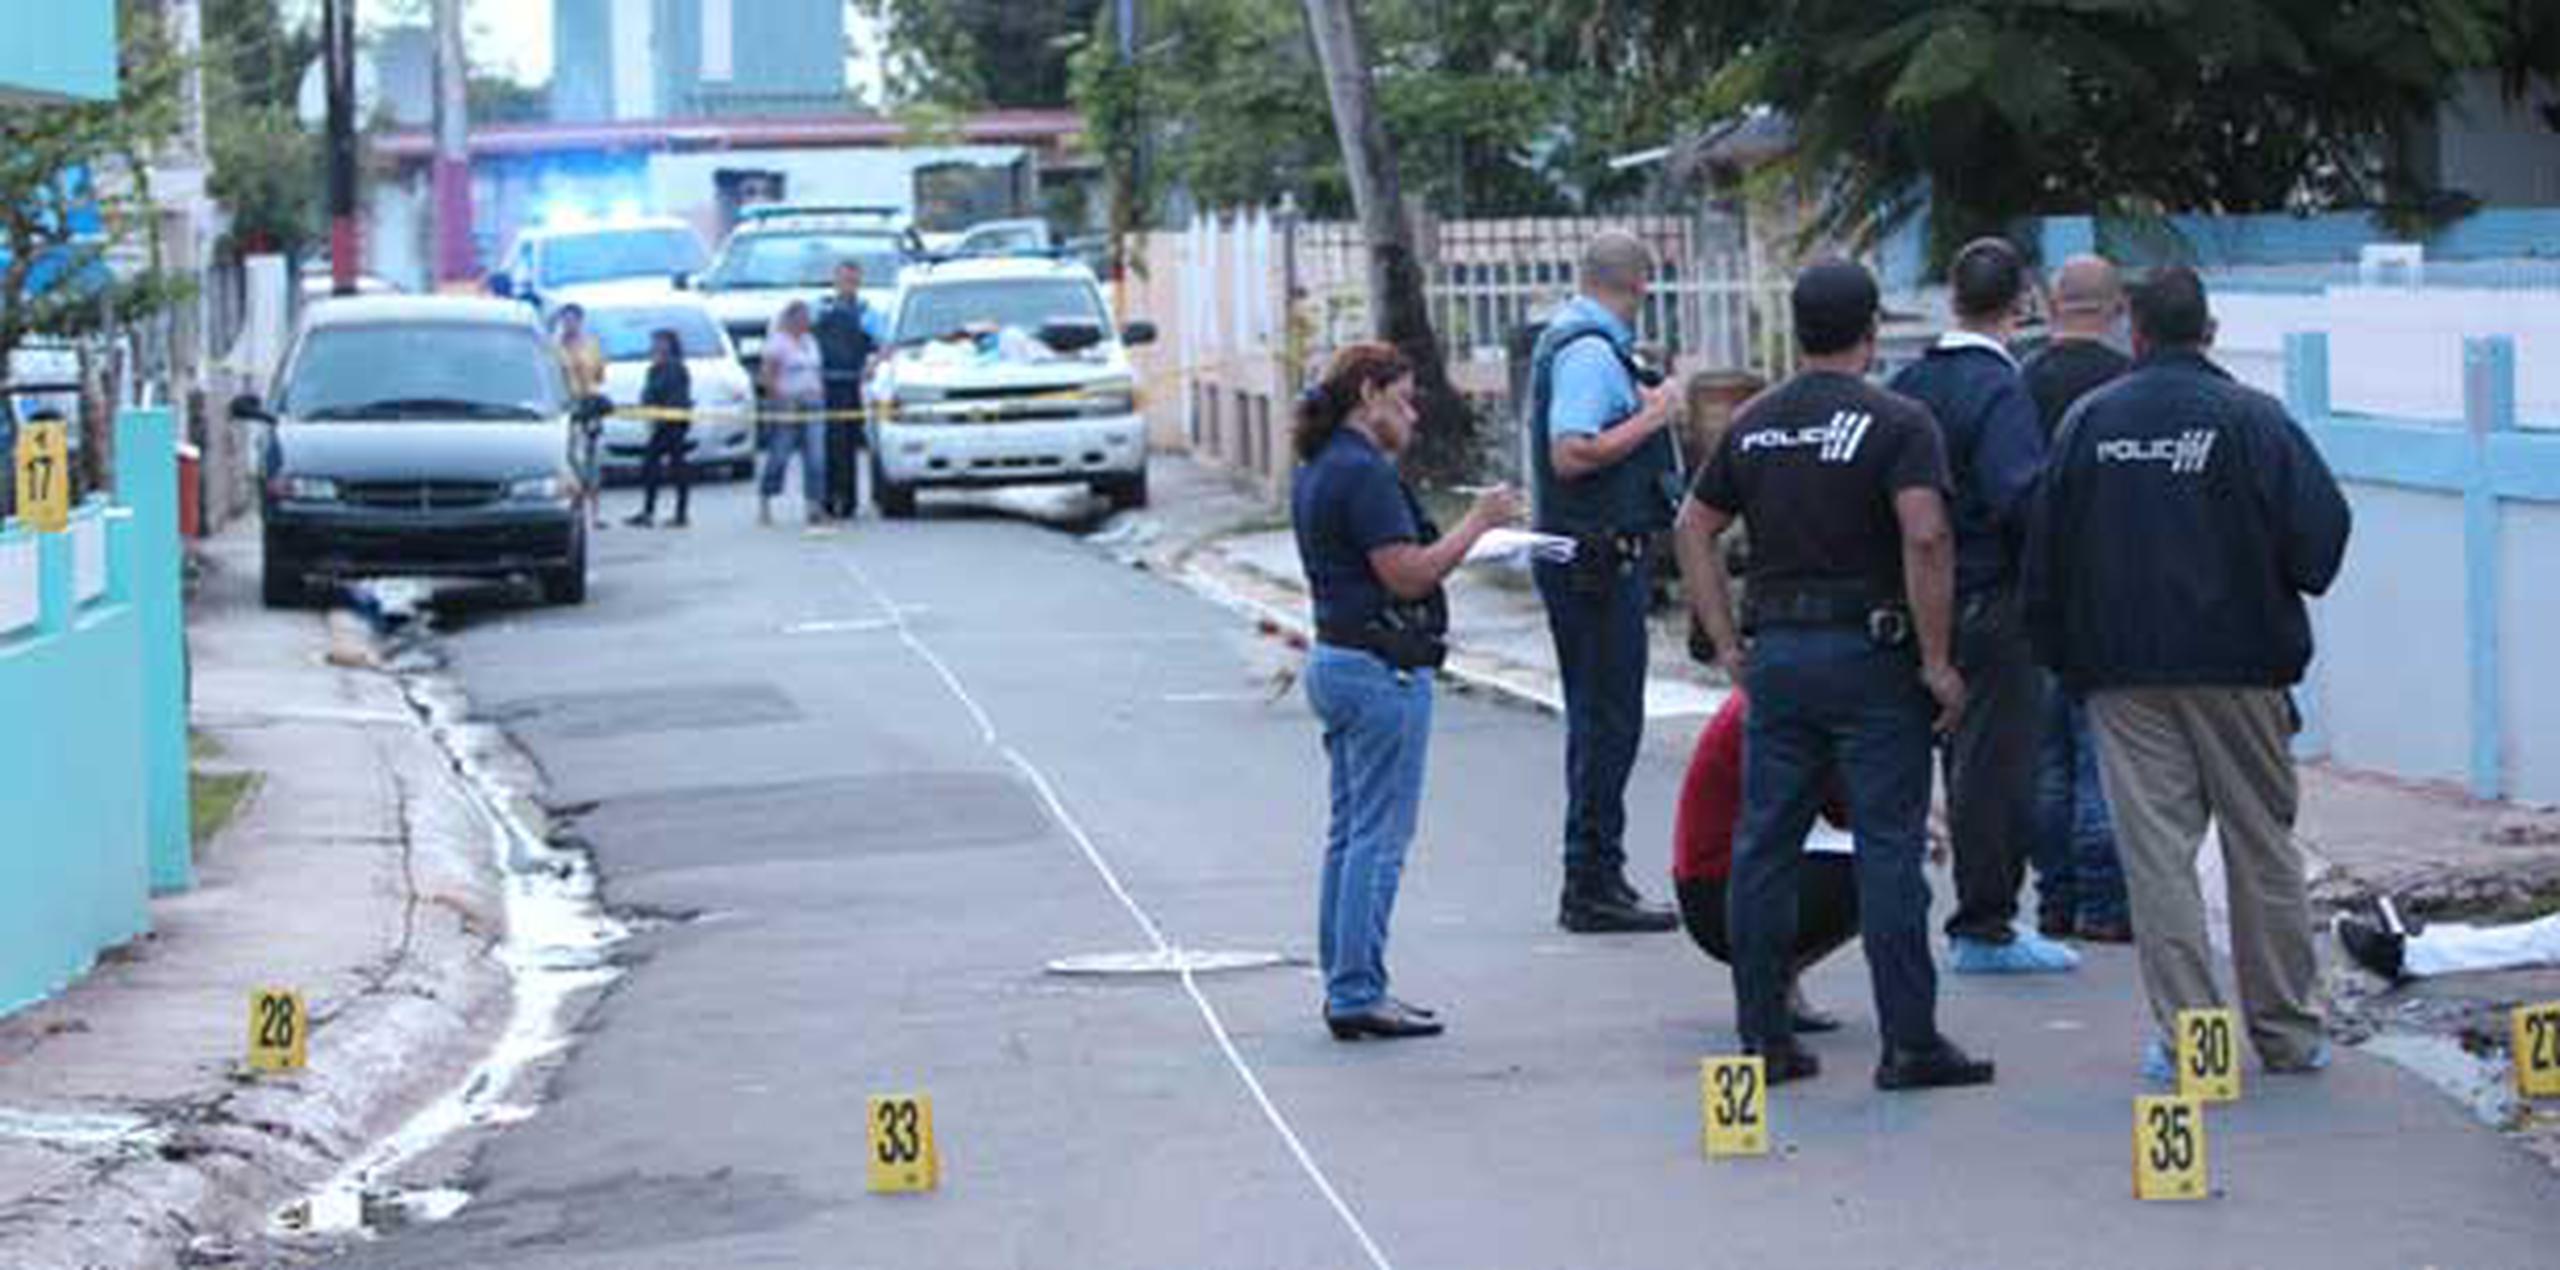 El último de los incidentes ocurrió a las 11:30 p.m. del domingo en la Cucharilla, del barrio Cucharilla, de Cataño. (alex.figueroa@gfrmedia.com)